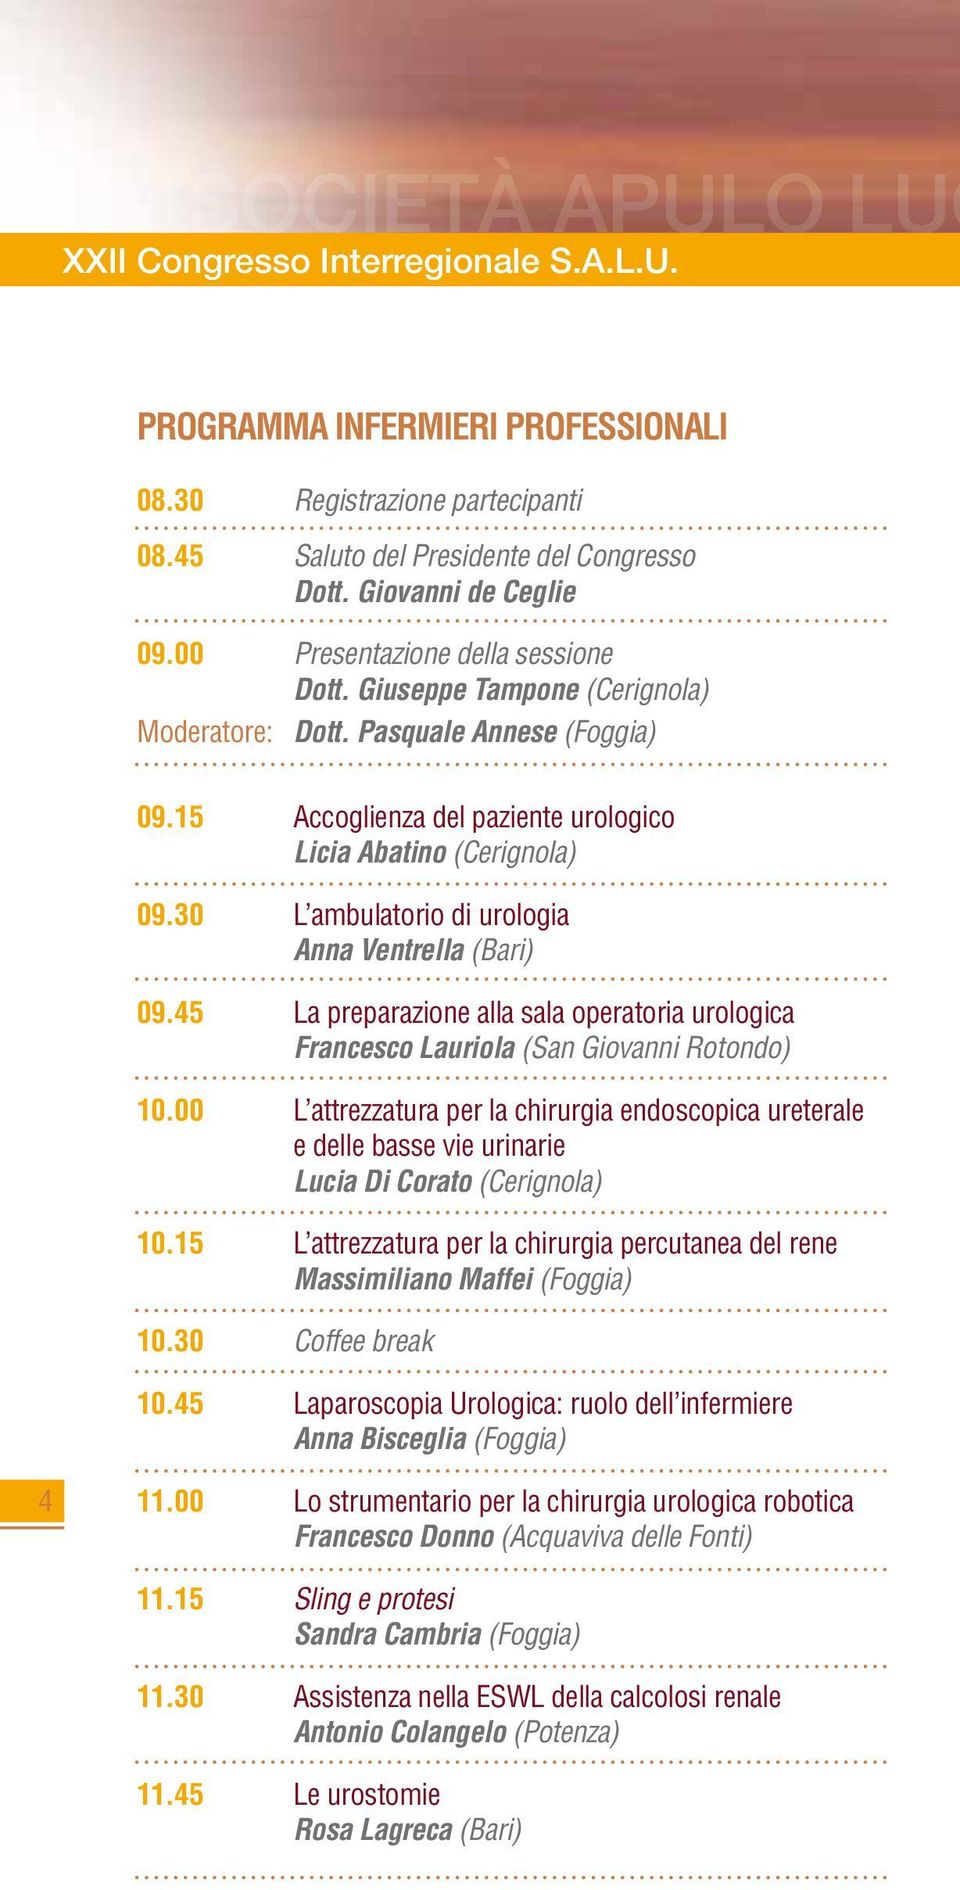 30 L ambulatorio di urologia Anna Ventrella (Bari) 09.45 La preparazione alla sala operatoria urologica Francesco Lauriola (San Giovanni Rotondo) 10.